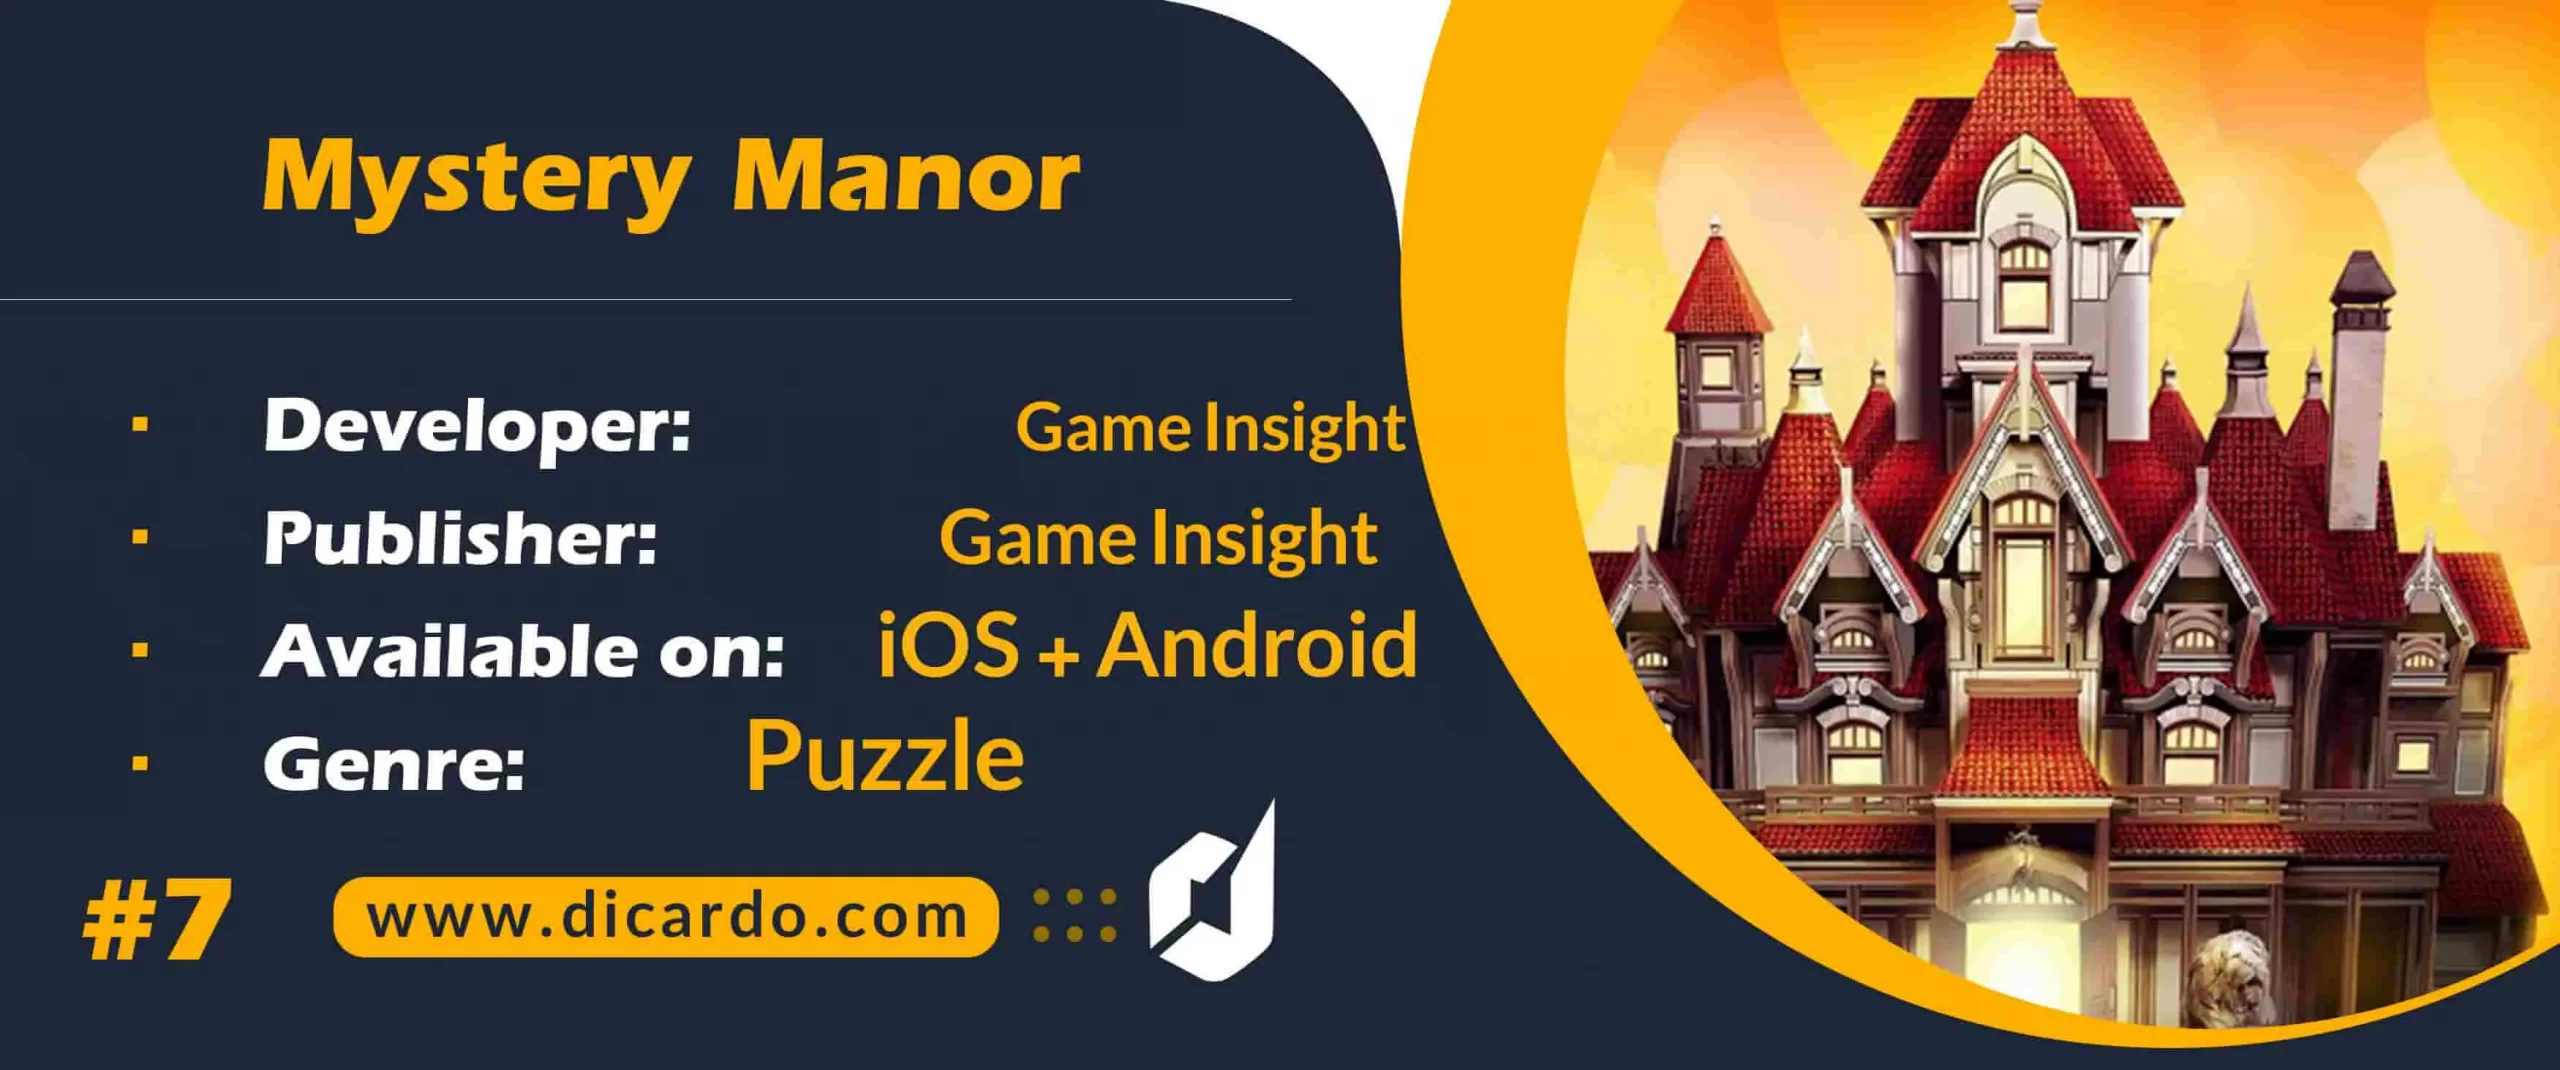 #7 میستری مانور Mystery Manor از بهترین بازیهای شی پنهان با قابلیت کسب درامد